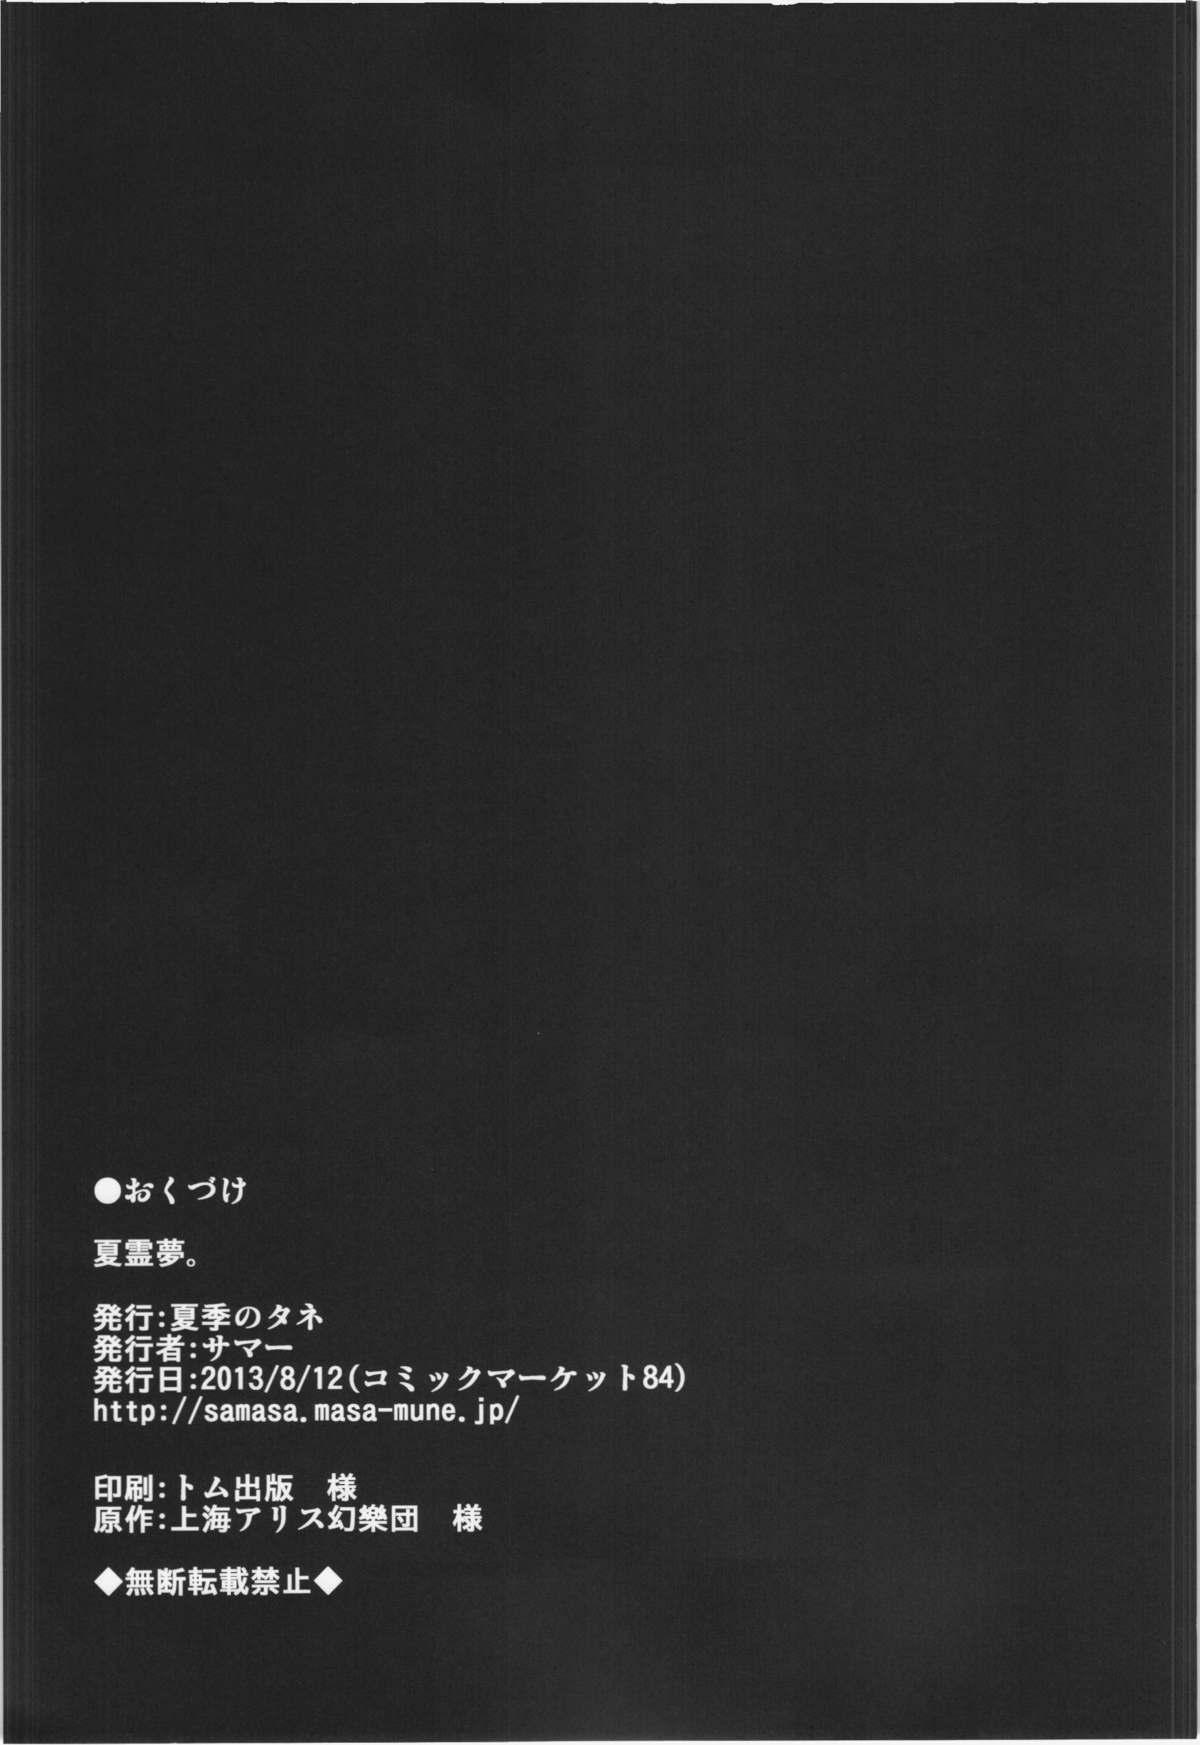 Office Natsu Reimu. - Touhou project Cut - Page 21